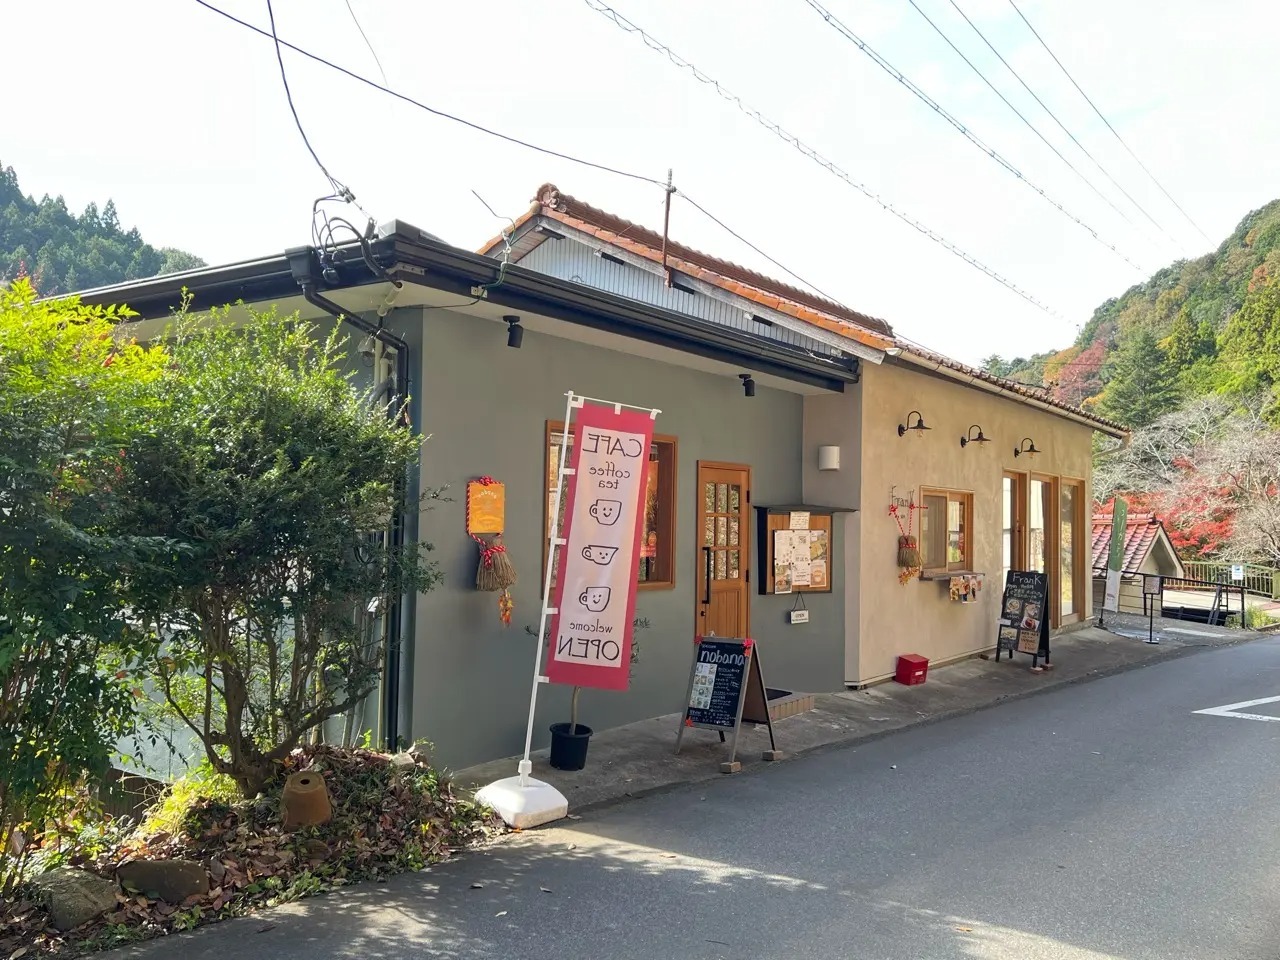 kitchen&cafe「nobana」